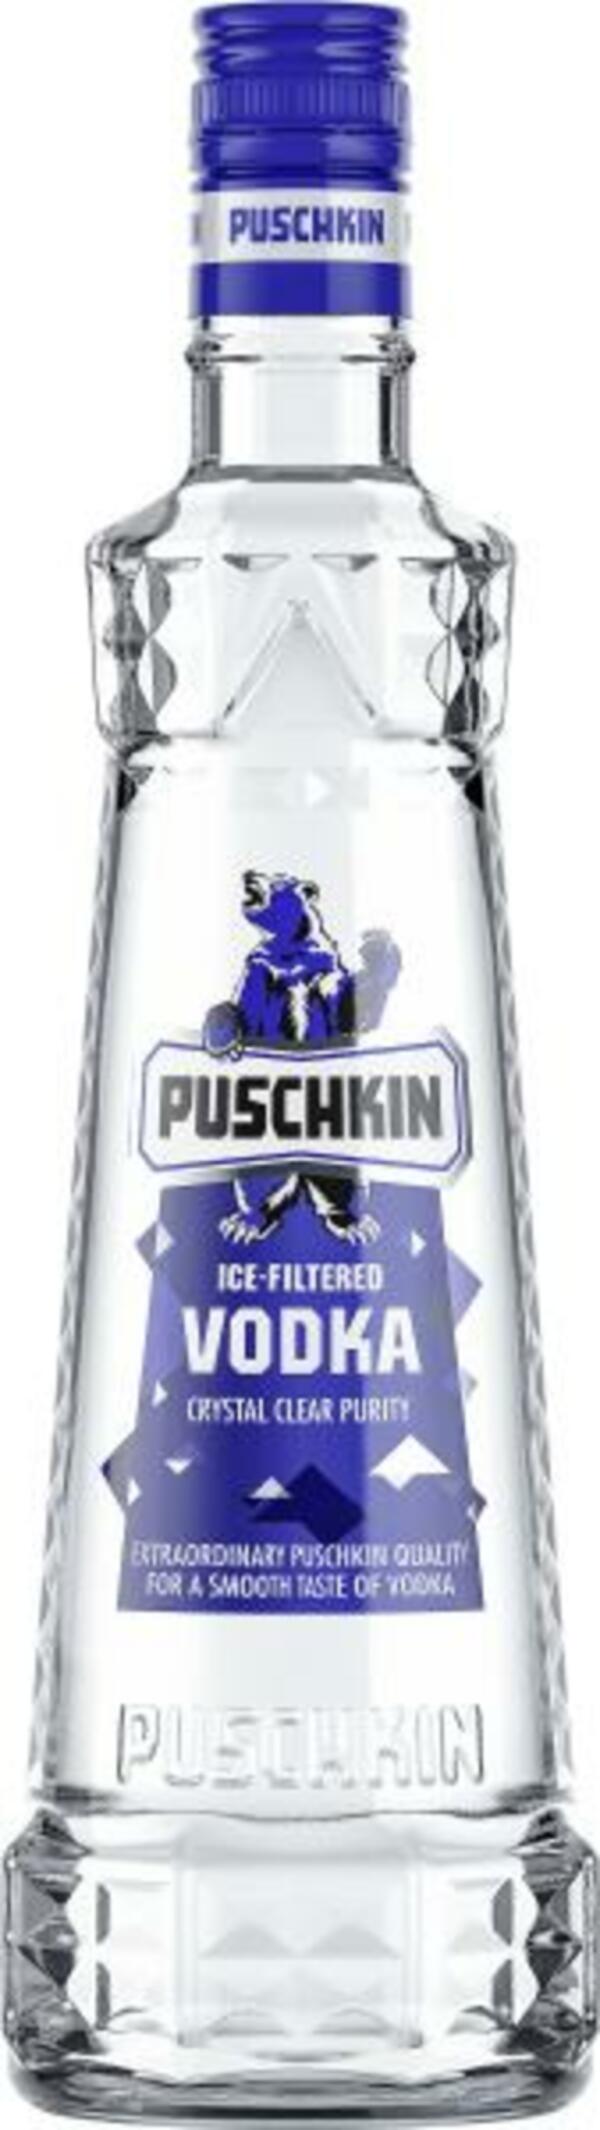 Bild 1 von Puschkin Vodka